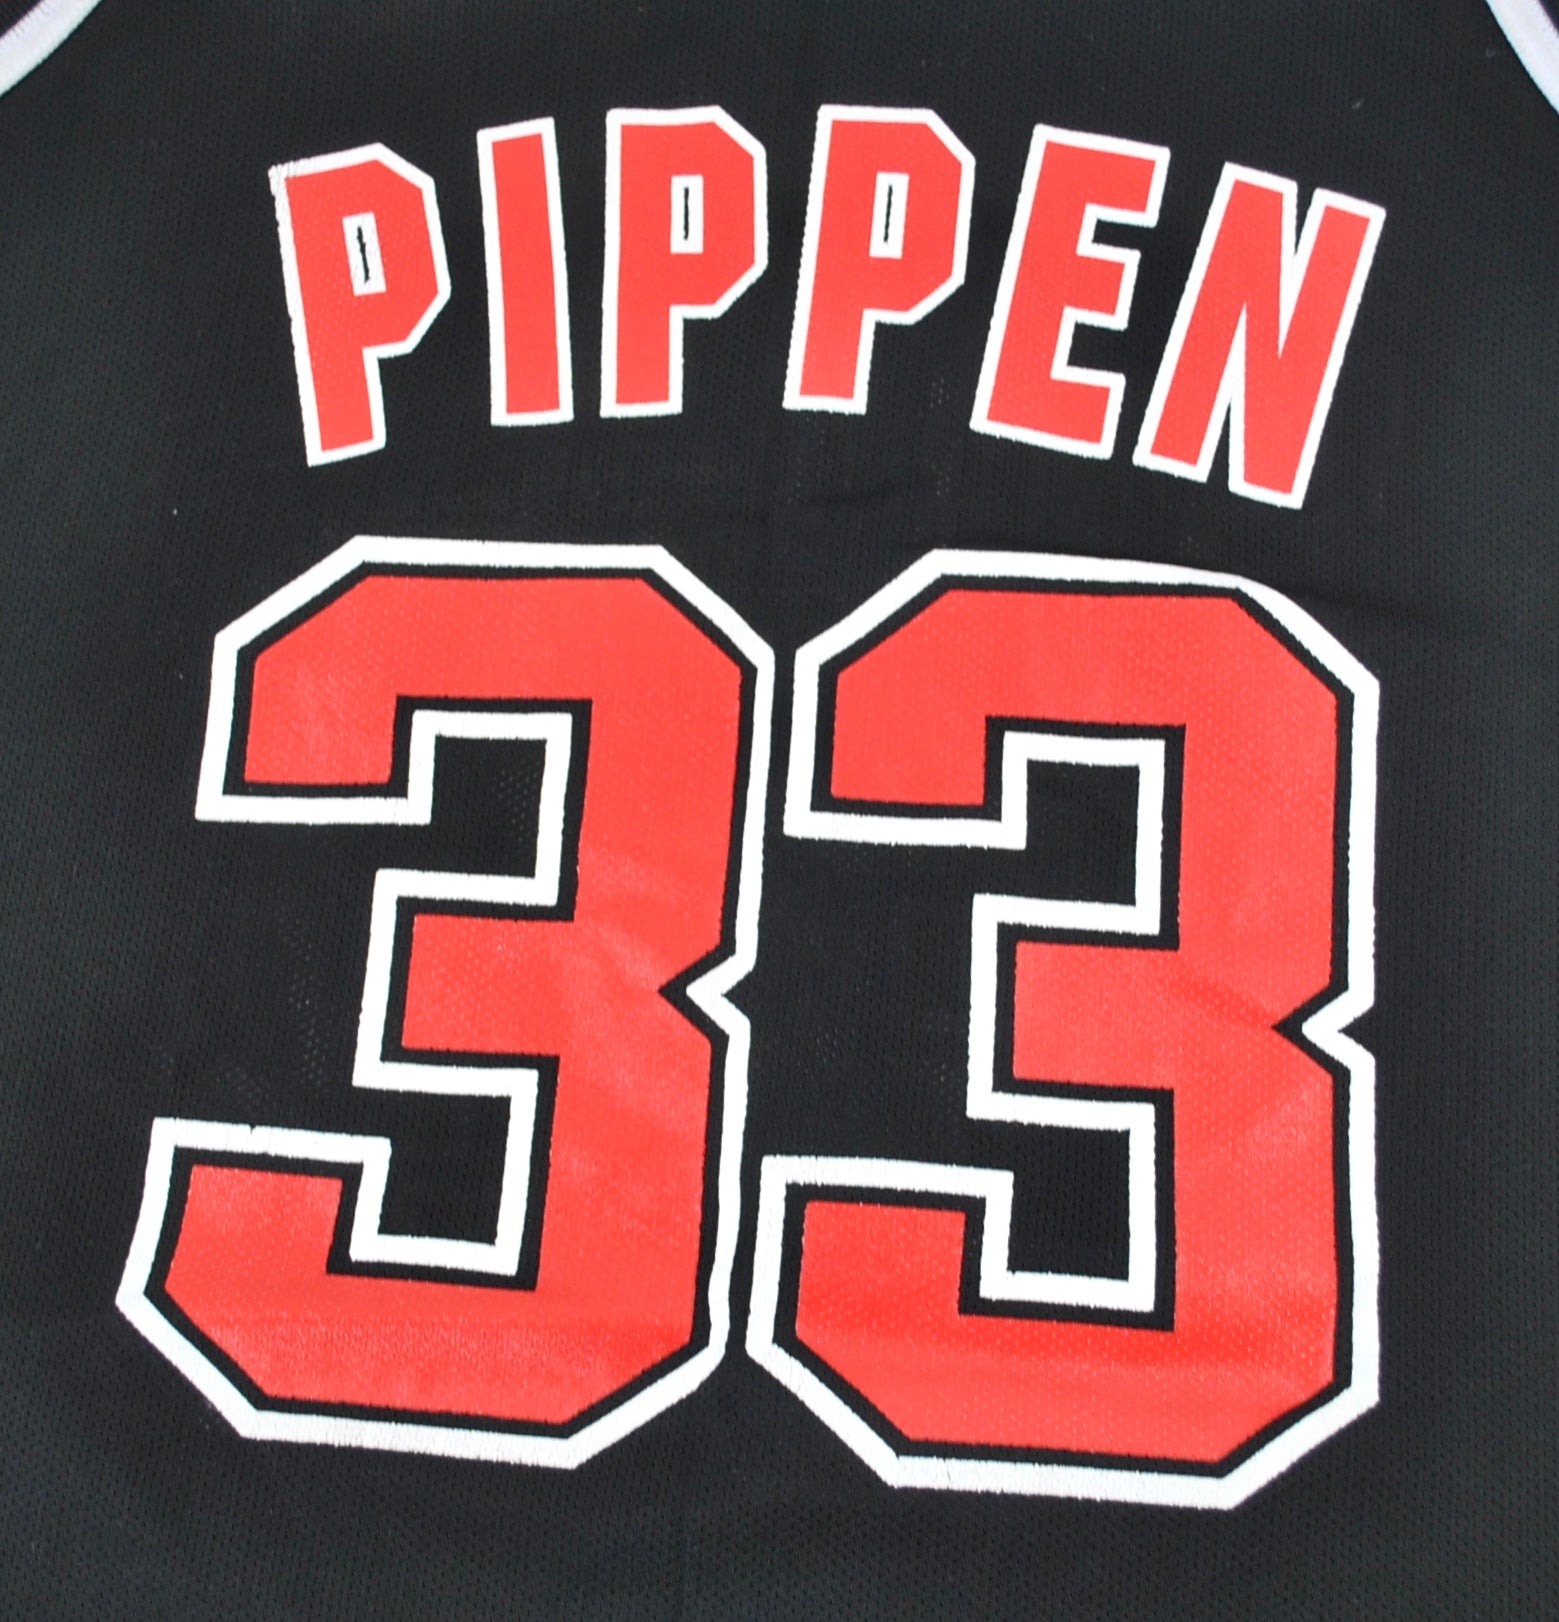 Scottie Pippen NBA Fan Jerseys for sale